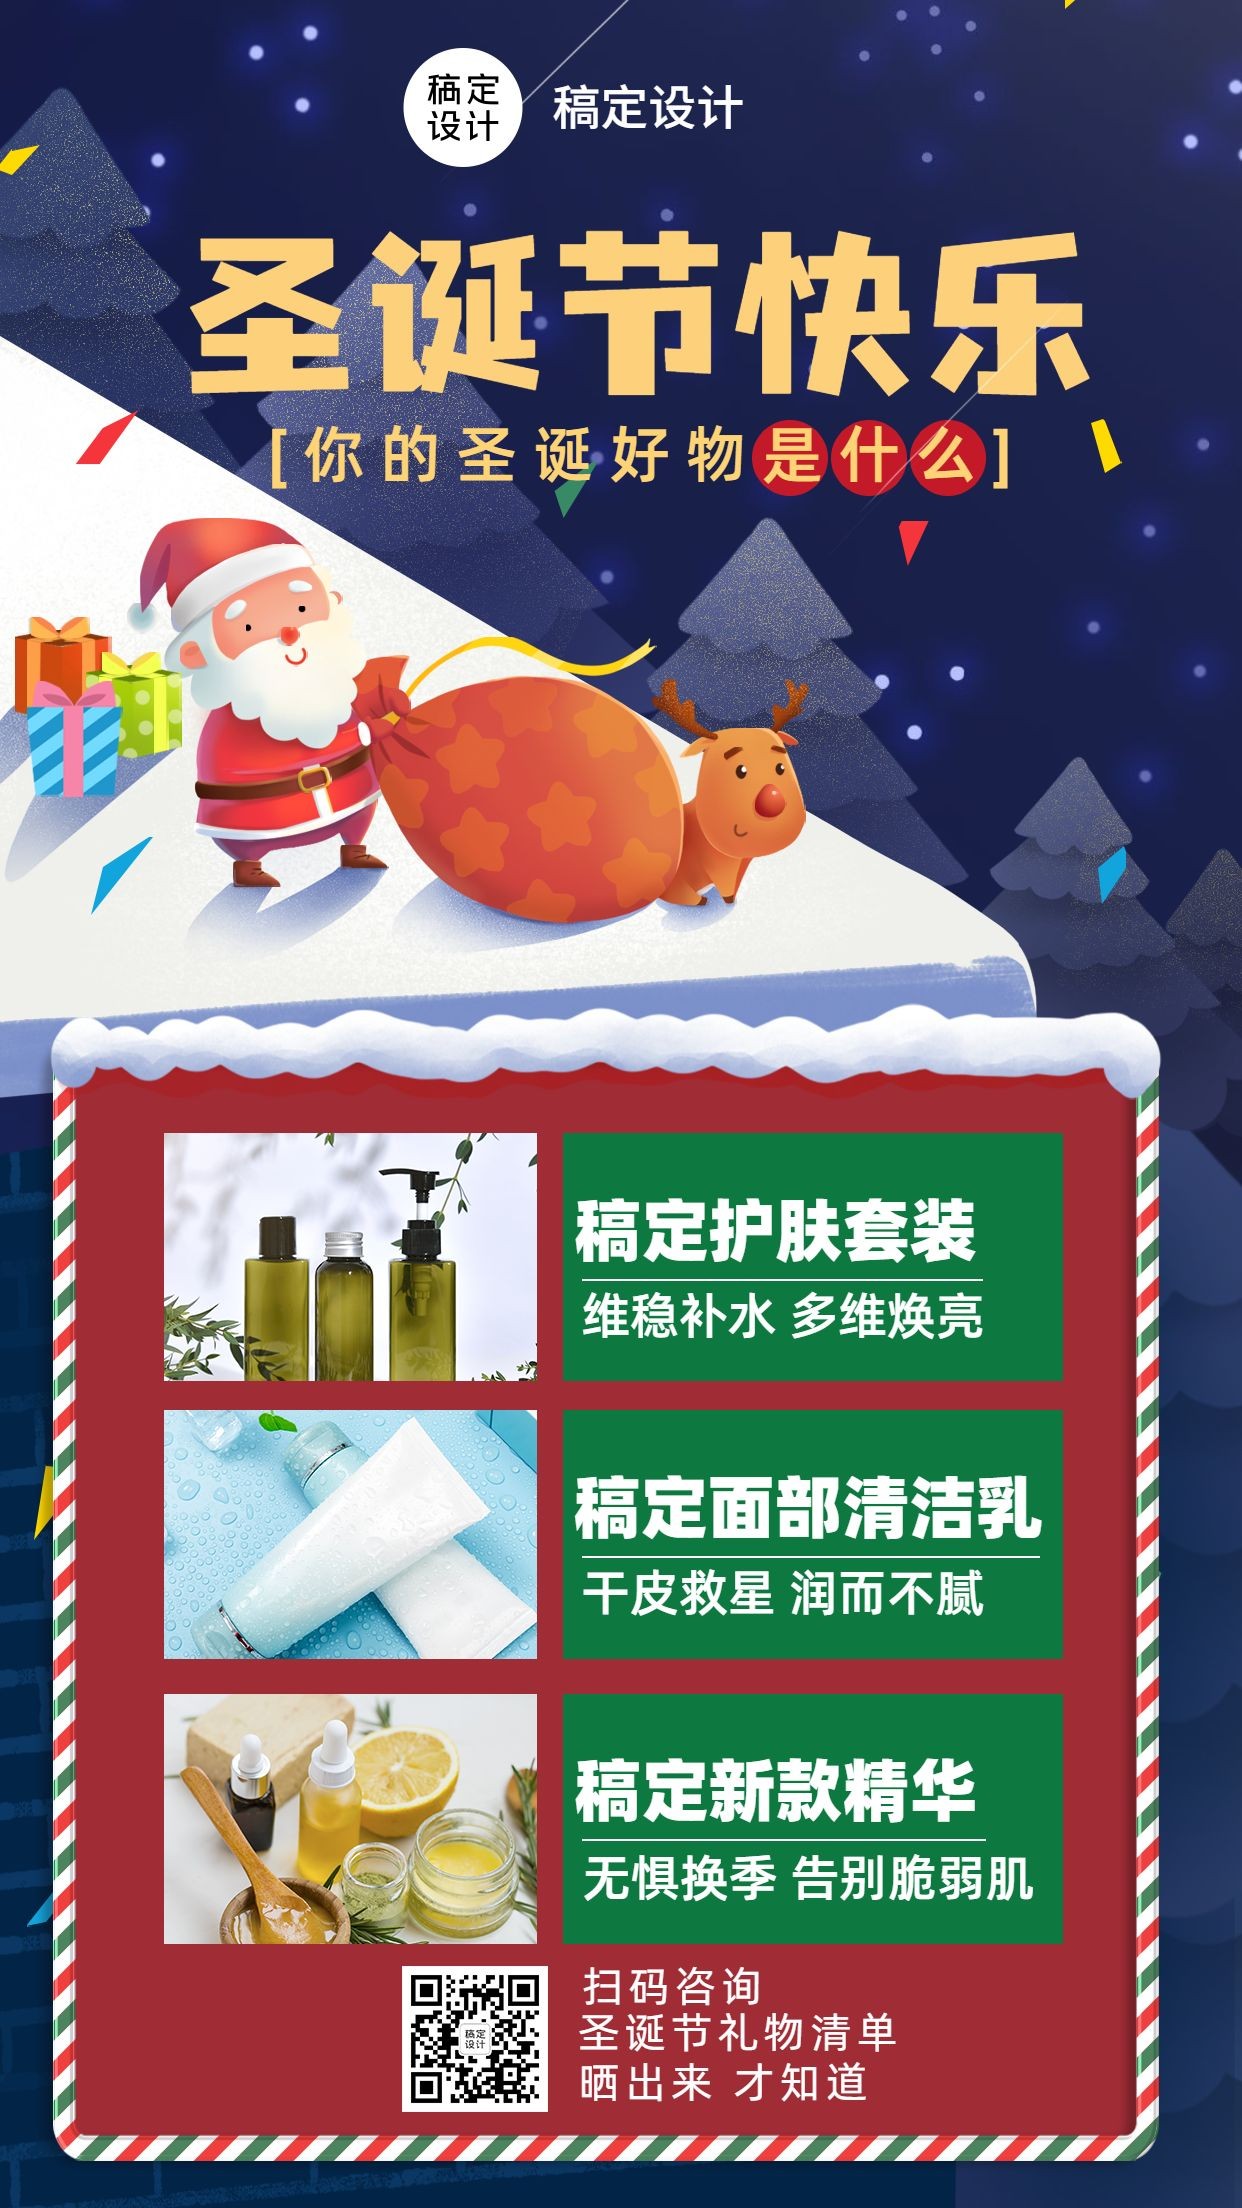 圣诞节平安夜微商多产品营销活动手机海报预览效果